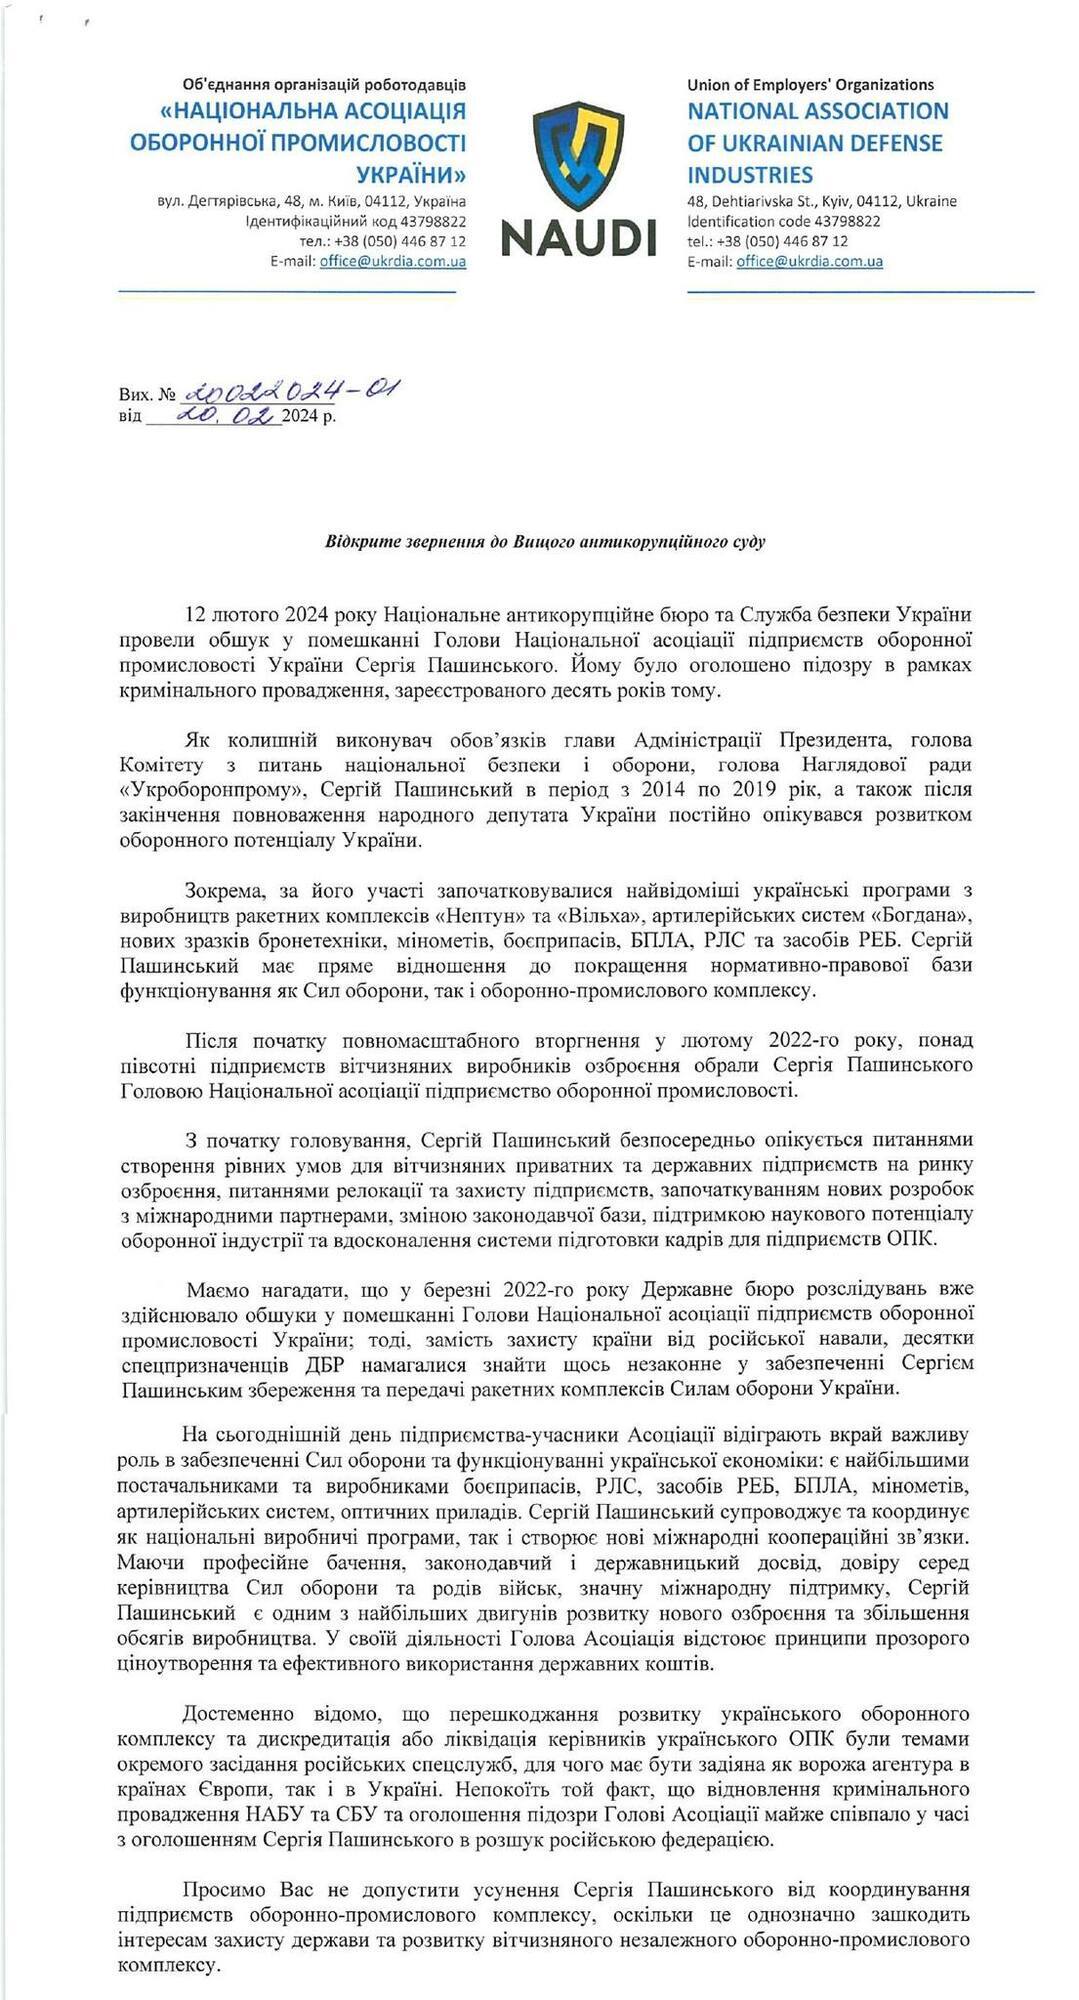 ВАСУ призвали не допустить отстранения Пашинского от координации предприятий ОПК